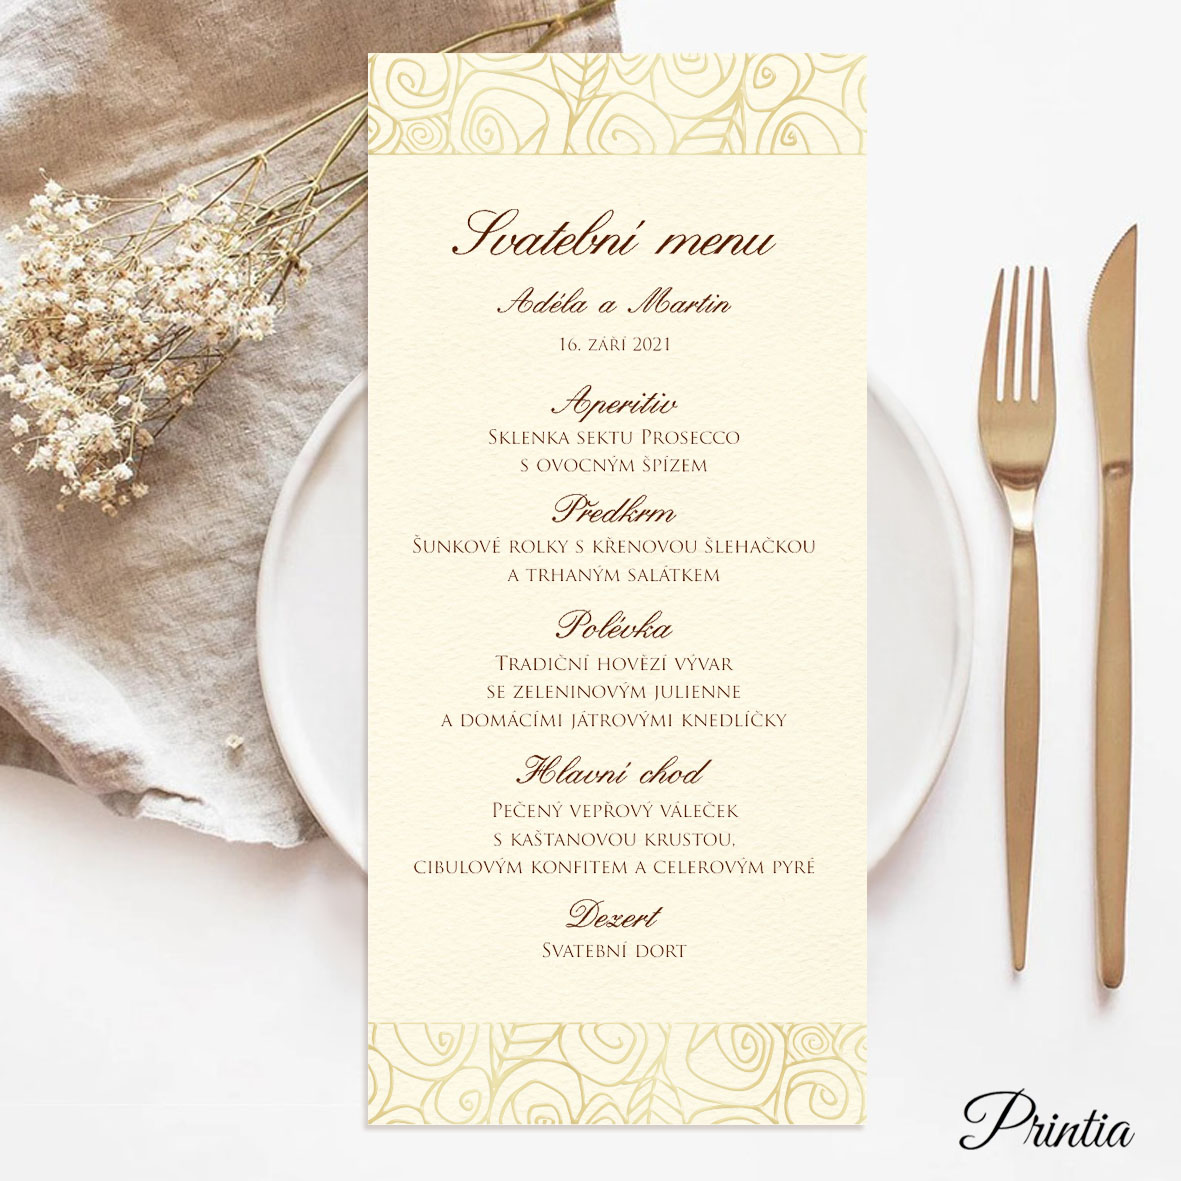 Svatební menu ornament stylizovaných květin